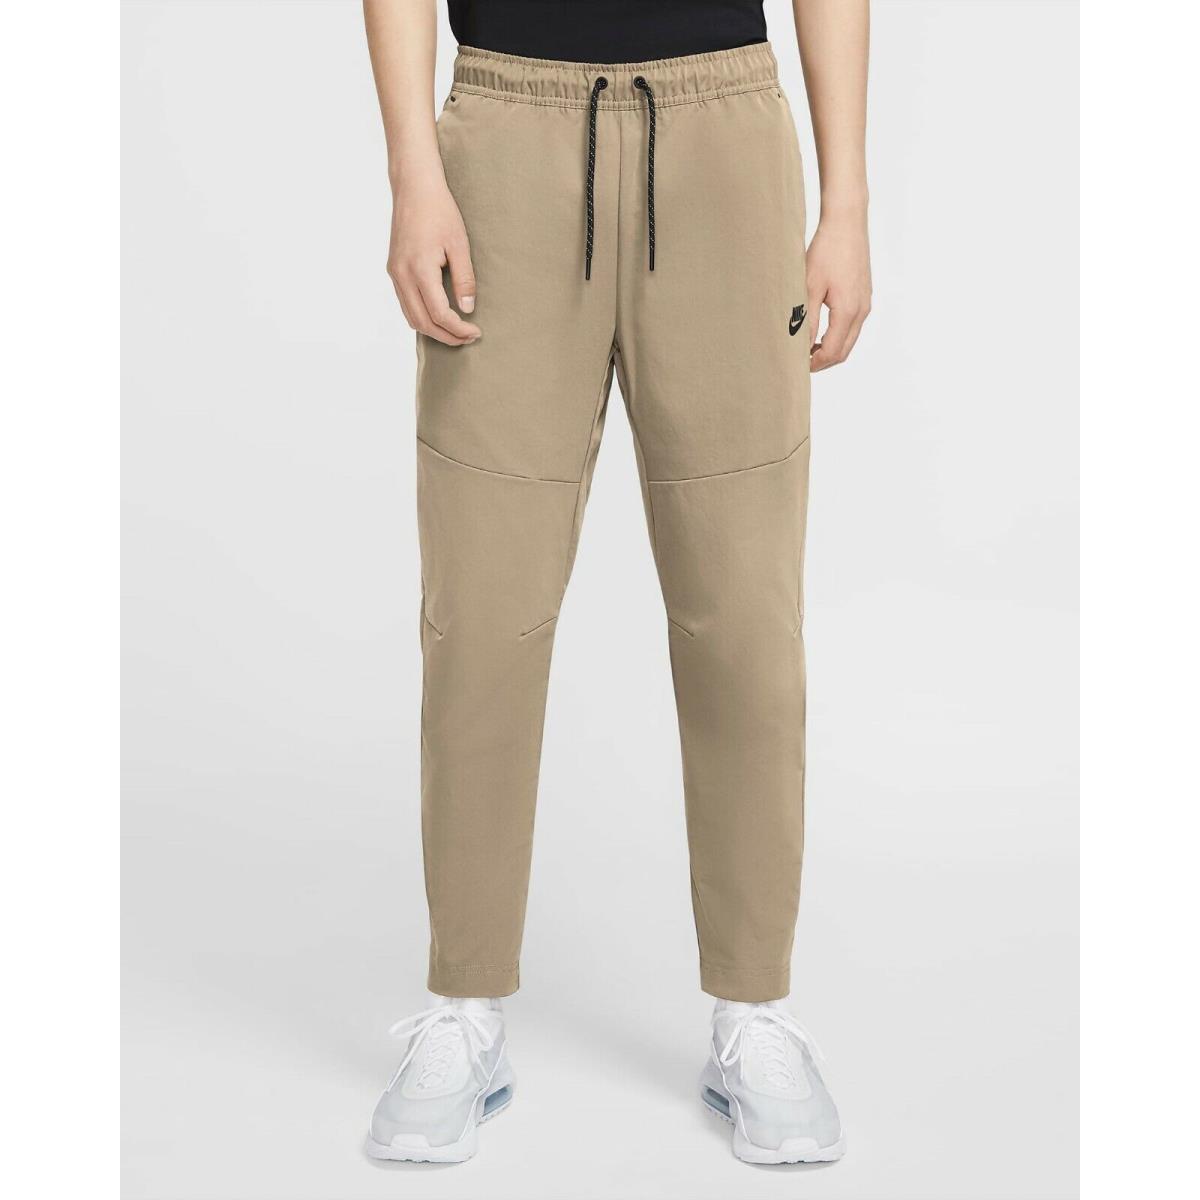 Medium - Nike Men`s Sportswear Woven Tech Pants CU4483 230